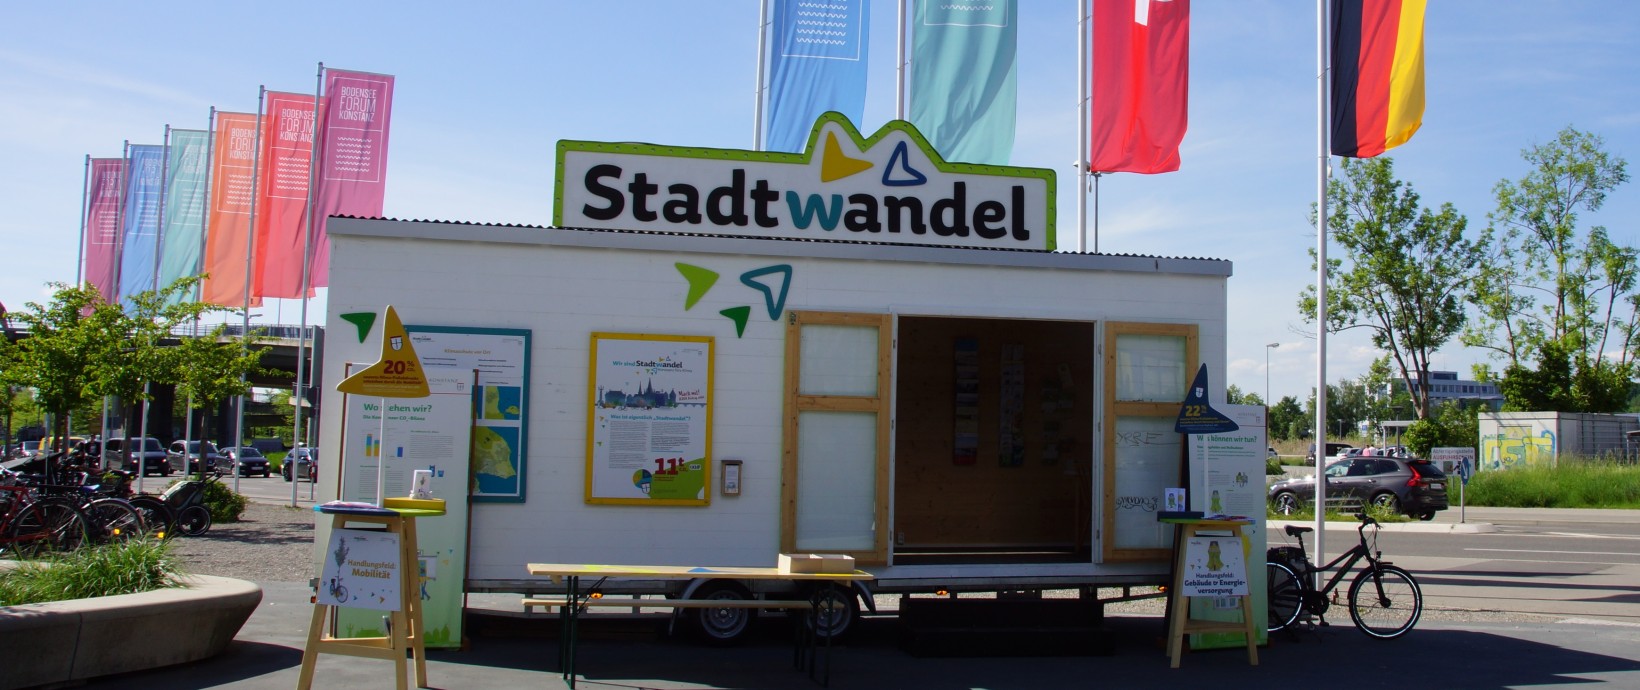 Das Stadtwandel-Mobil vor Flaggen des Bodenseeforums